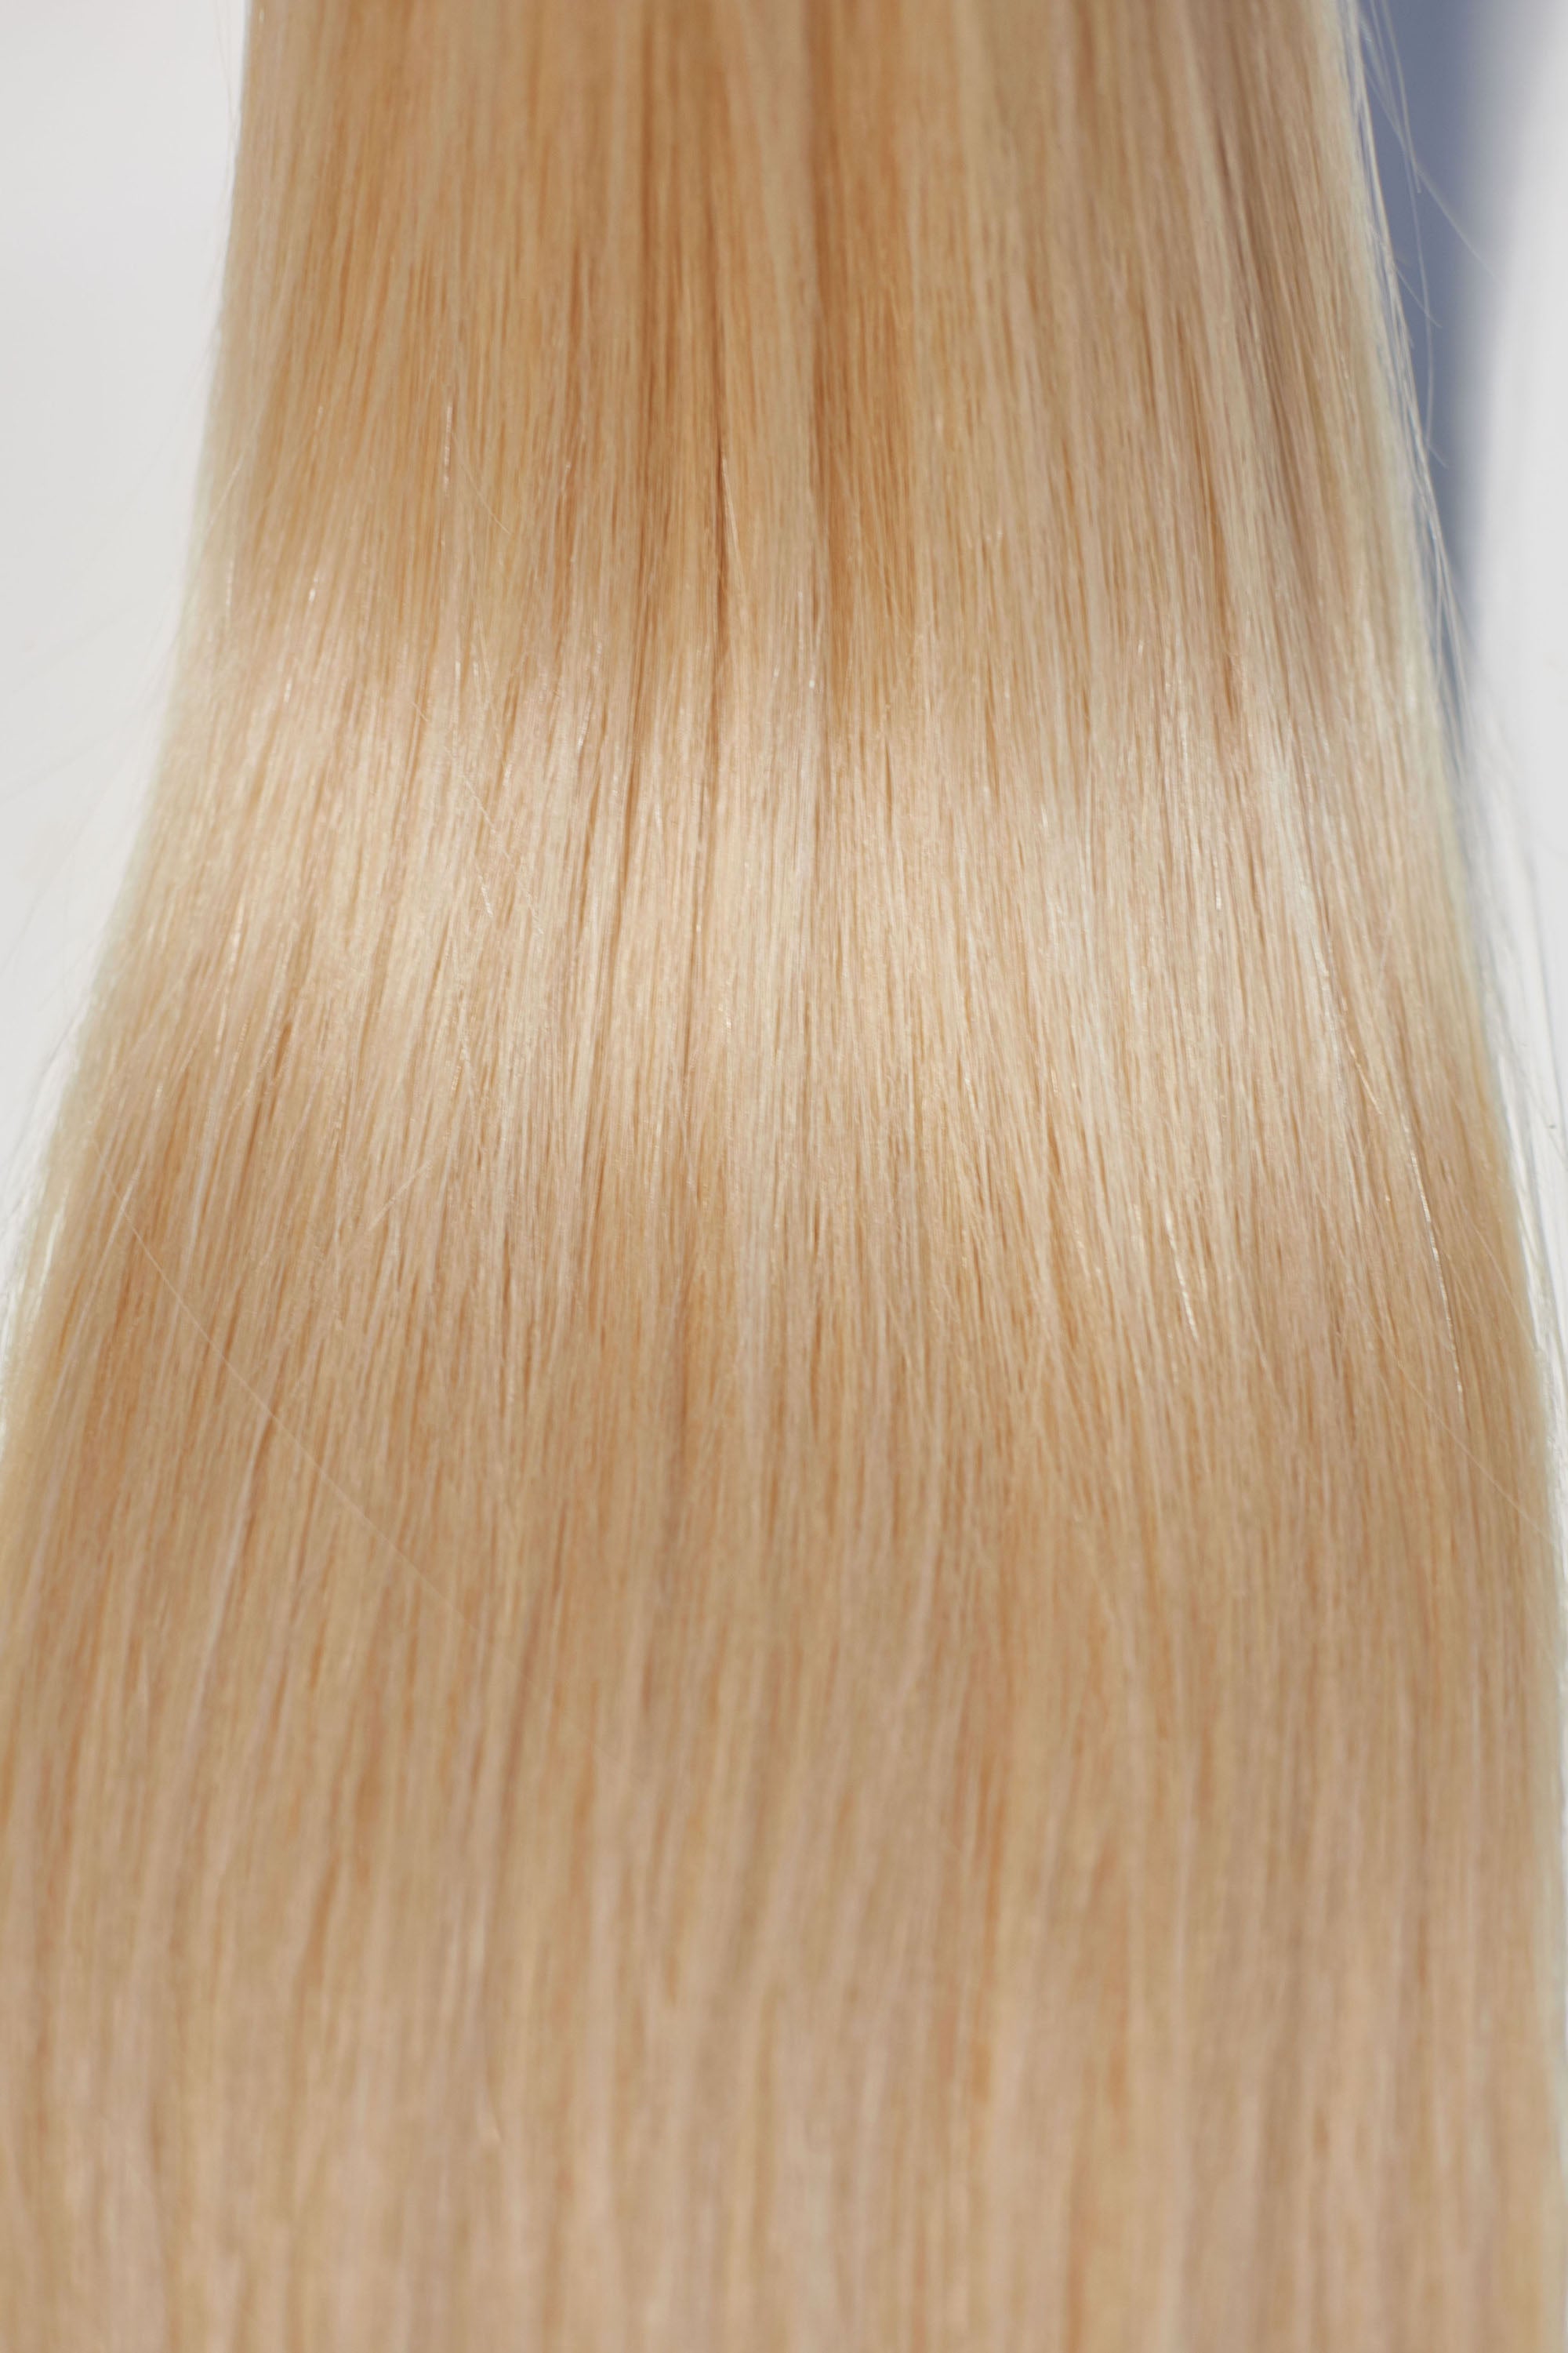 Behair professional Keratin Tip "Premium" 26" (65cm) Natural Straight Beach Blonde #613 - 25g (Micro - 0.5g each pcs) hair extensions